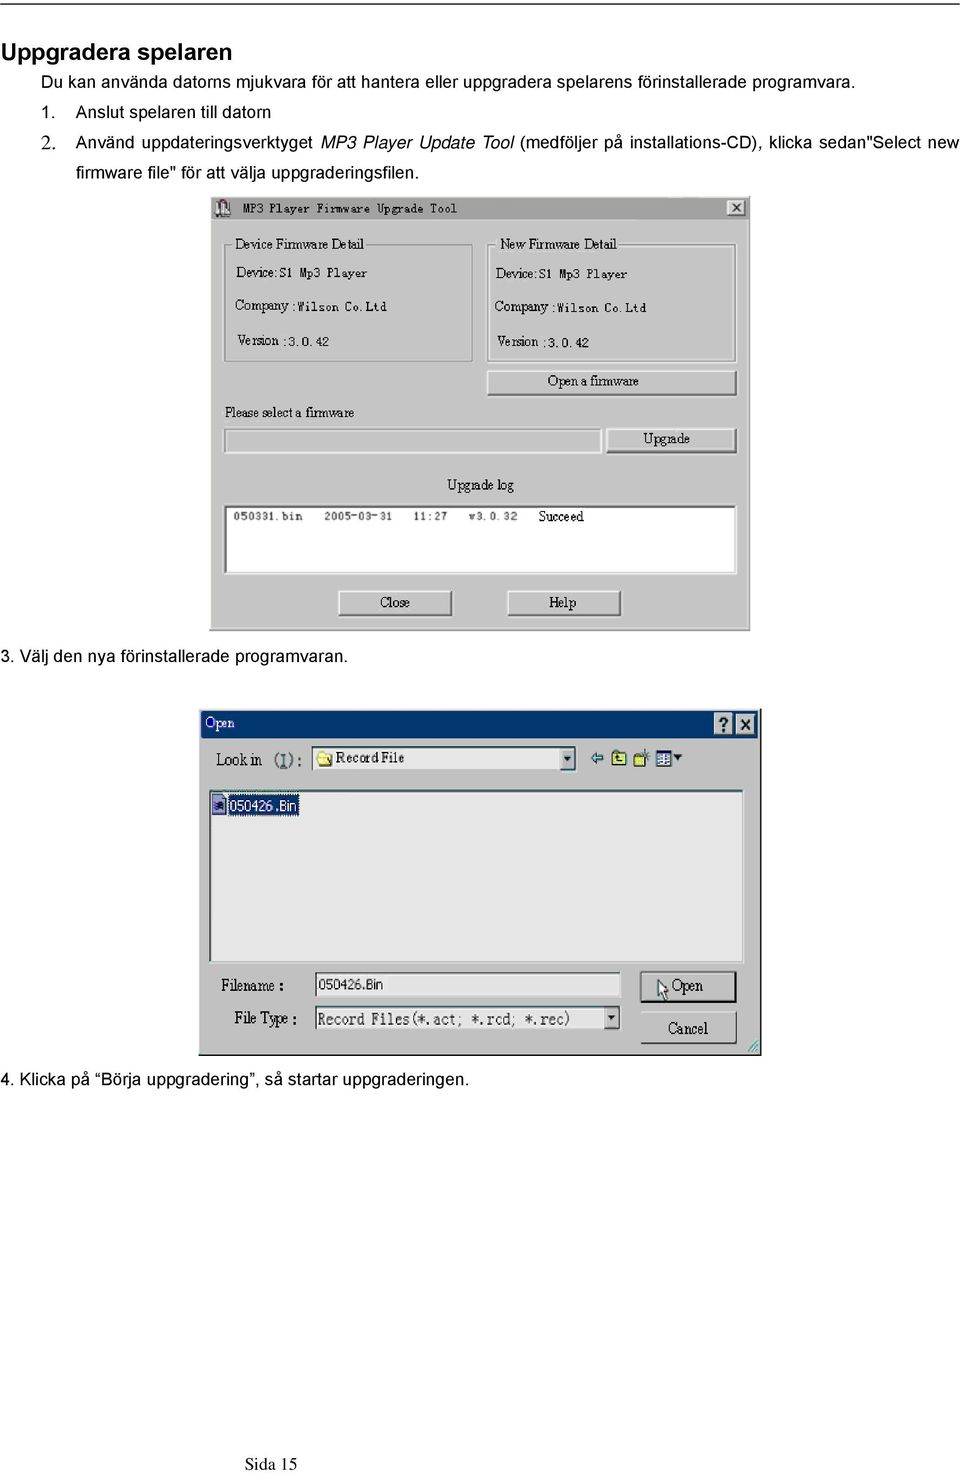 Använd uppdateringsverktyget MP3 Player Update Tool (medföljer på installations-cd), klicka sedan"select